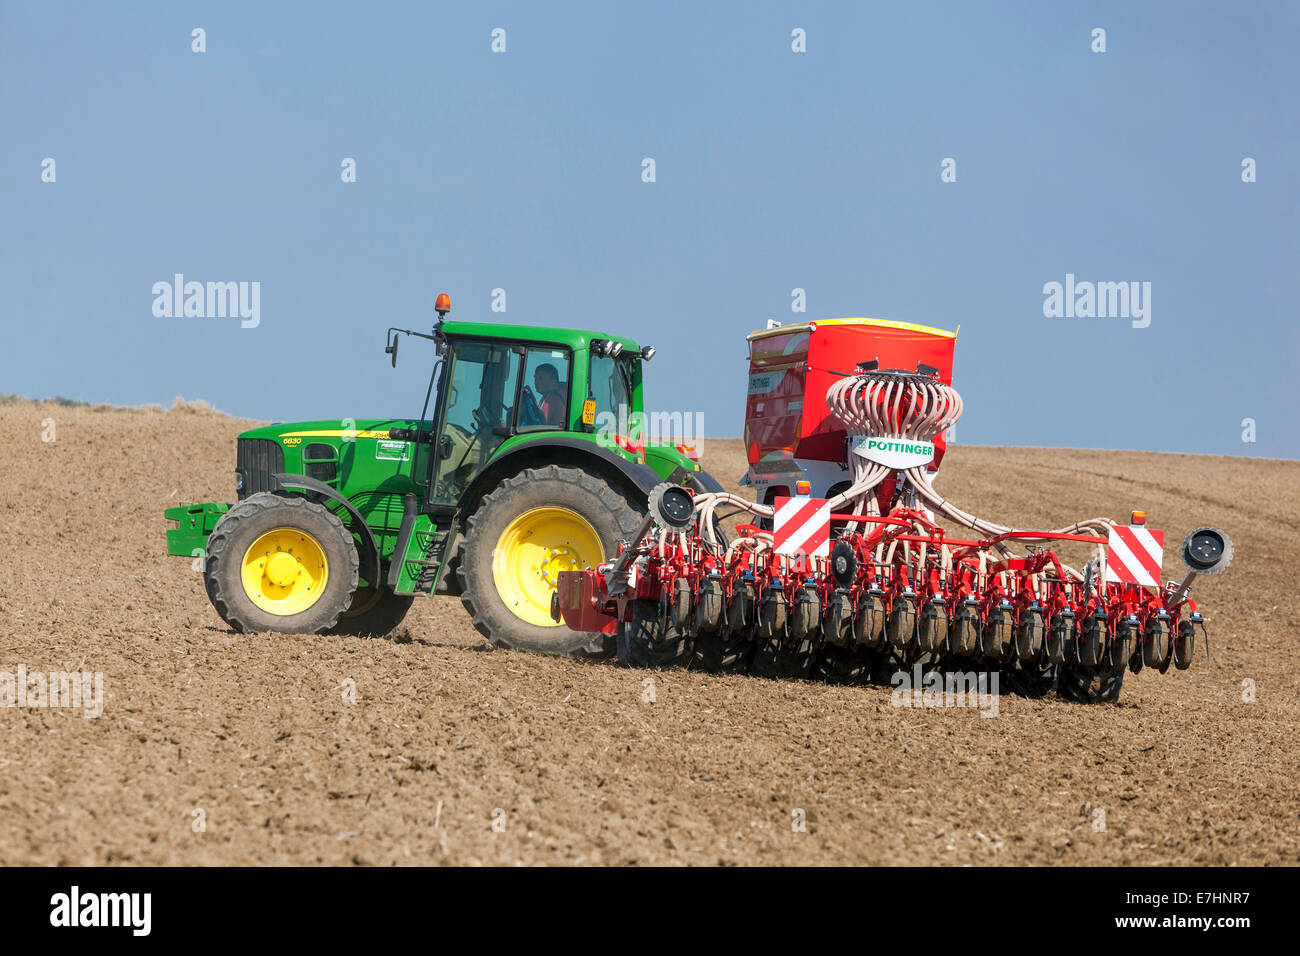 John Deere Traktor Aussaat von Saatgut auf einem Feld, Getreideweizen, Saisonarbeit, Tschechische Republik Landwirt Landwirtschaft Maschinen Aussaat Maschine Sämaschine Bohrmaschine Traktor Stockfoto